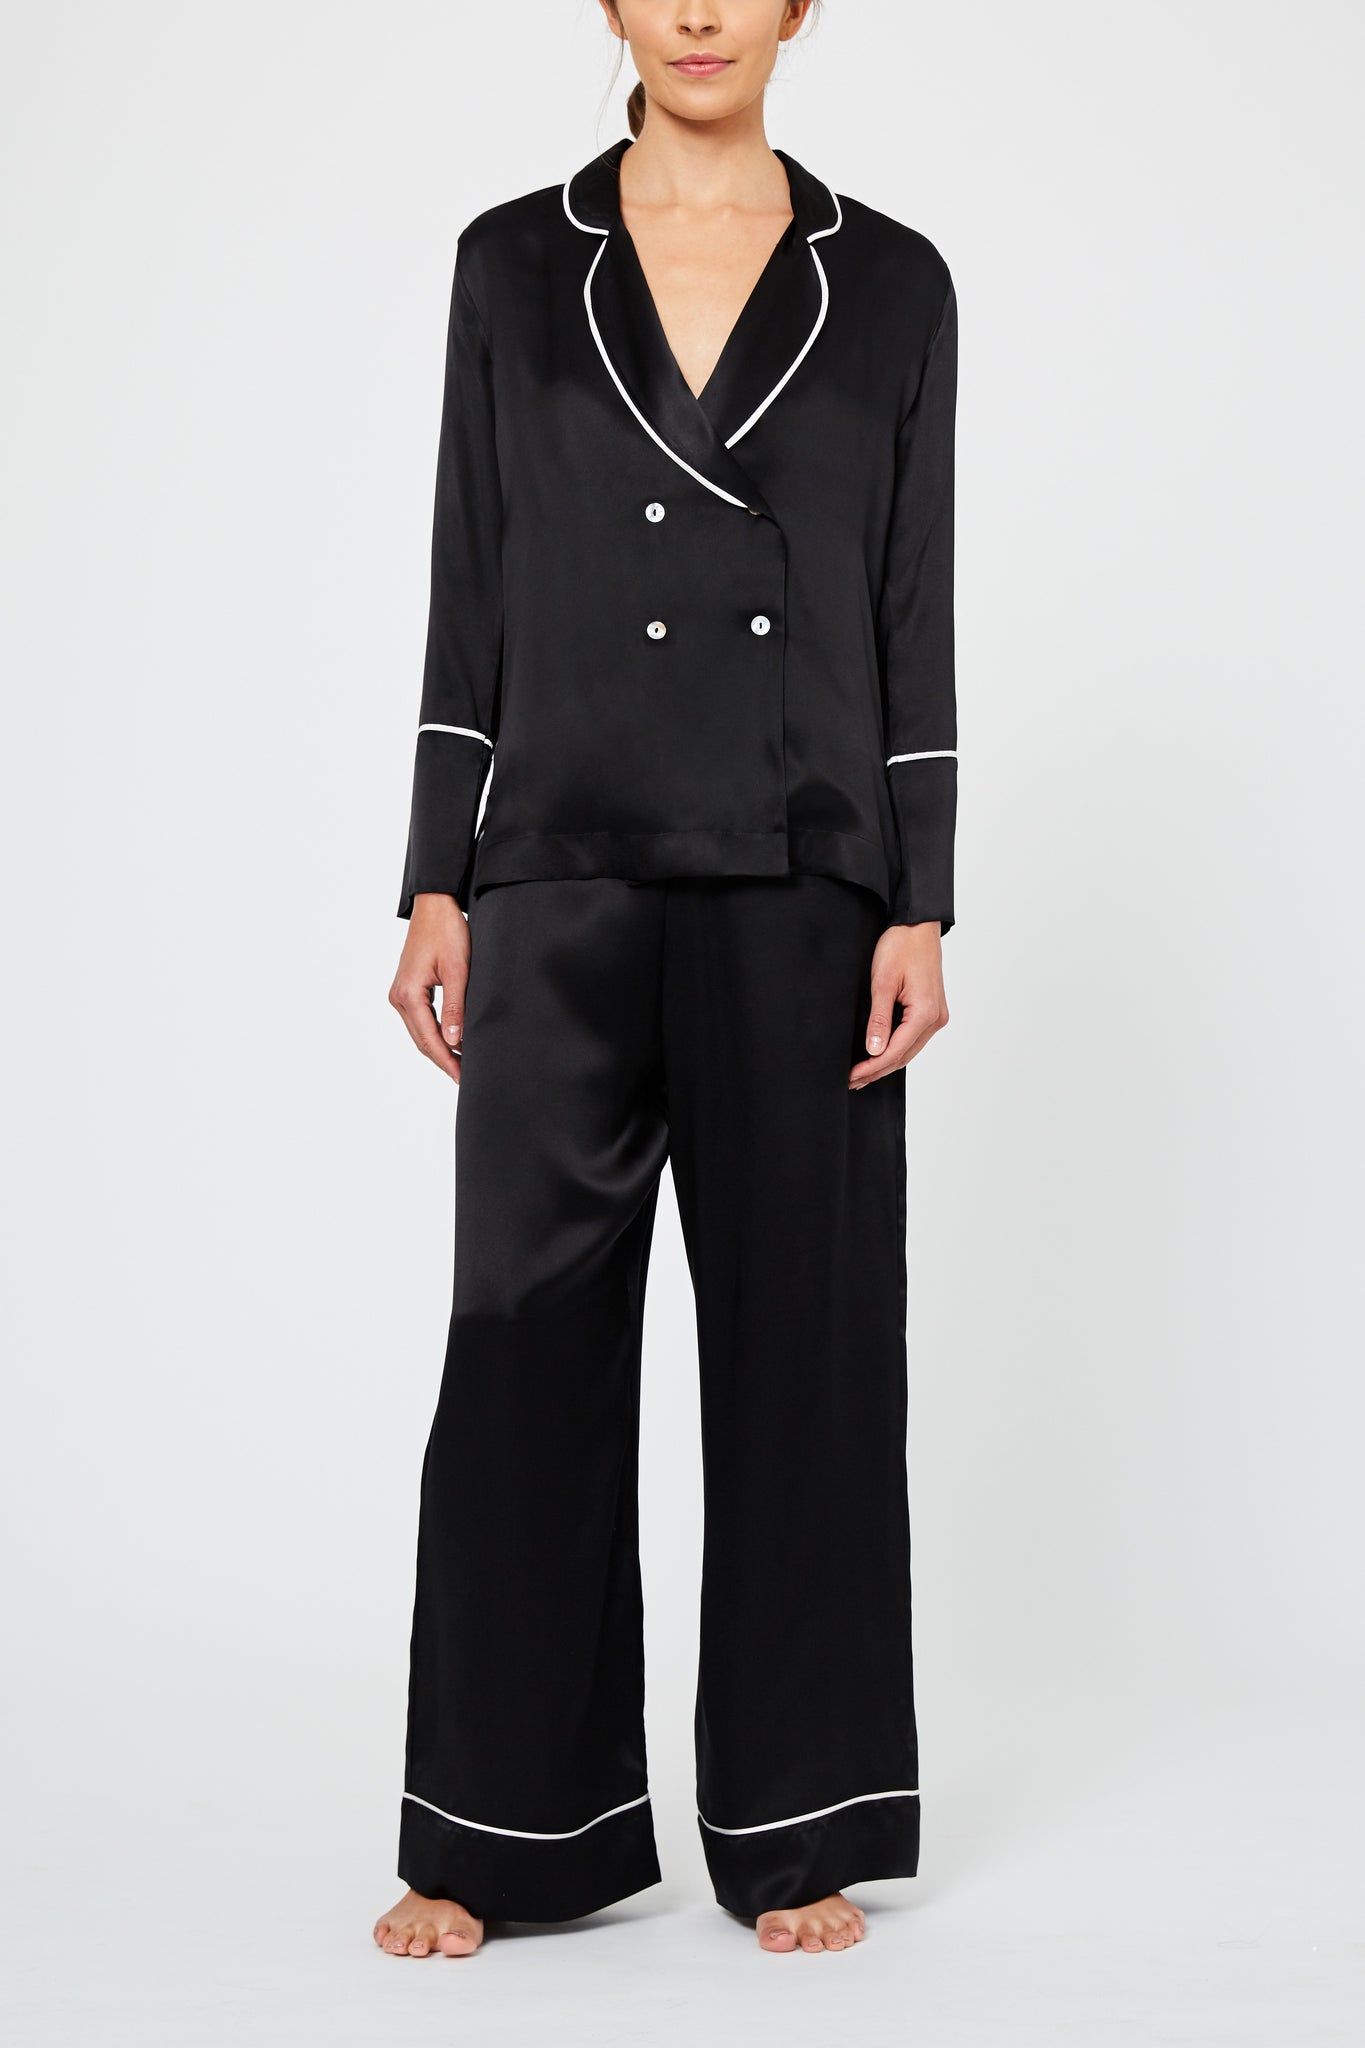 Dietrich Black Silk Pyjama Set - Women's Luxury Sleepwear | Hesper Fox